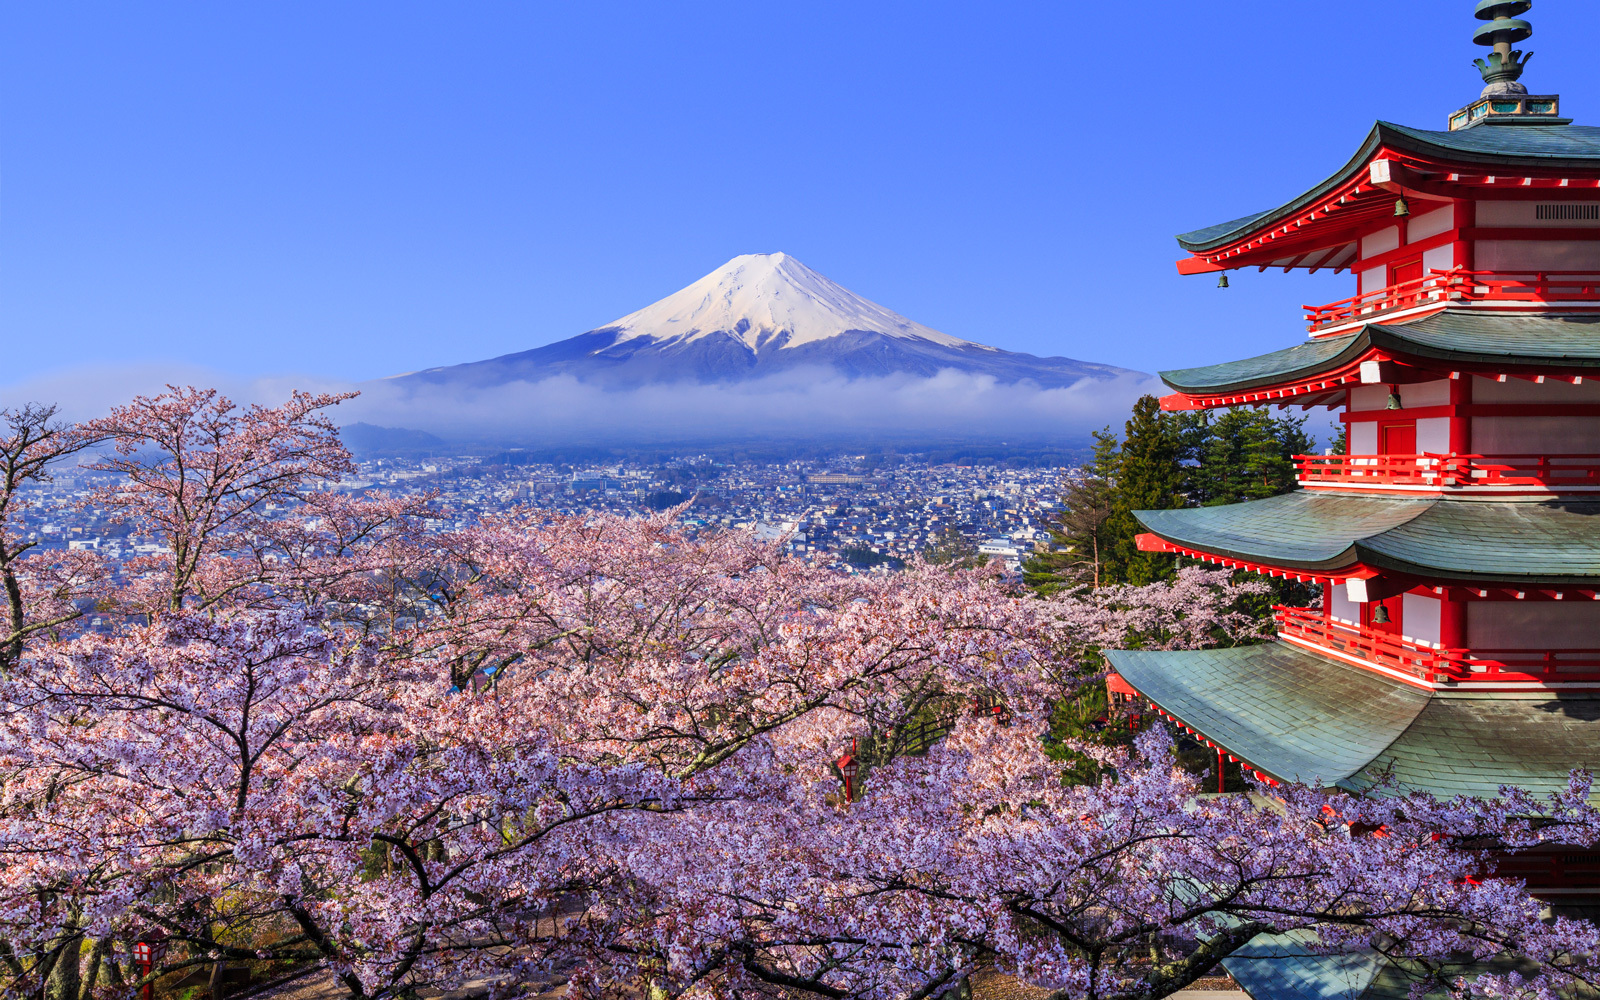 日本现千年来最早樱花季 美好景象背后掩藏怎样的危机?